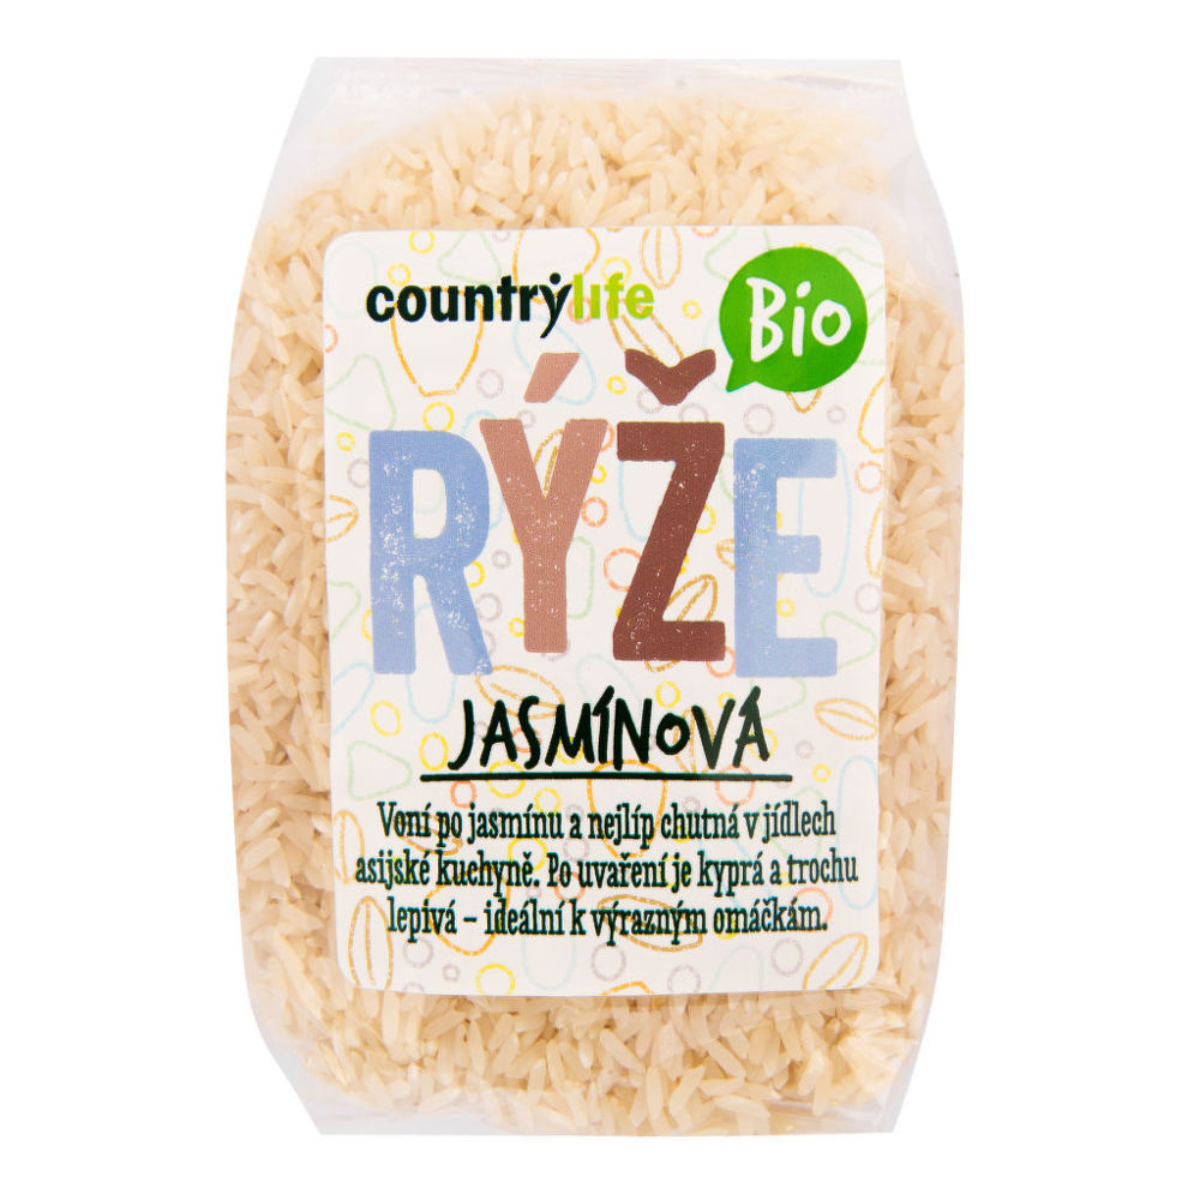 E-shop BIO Jazmínová ryža - Country Life